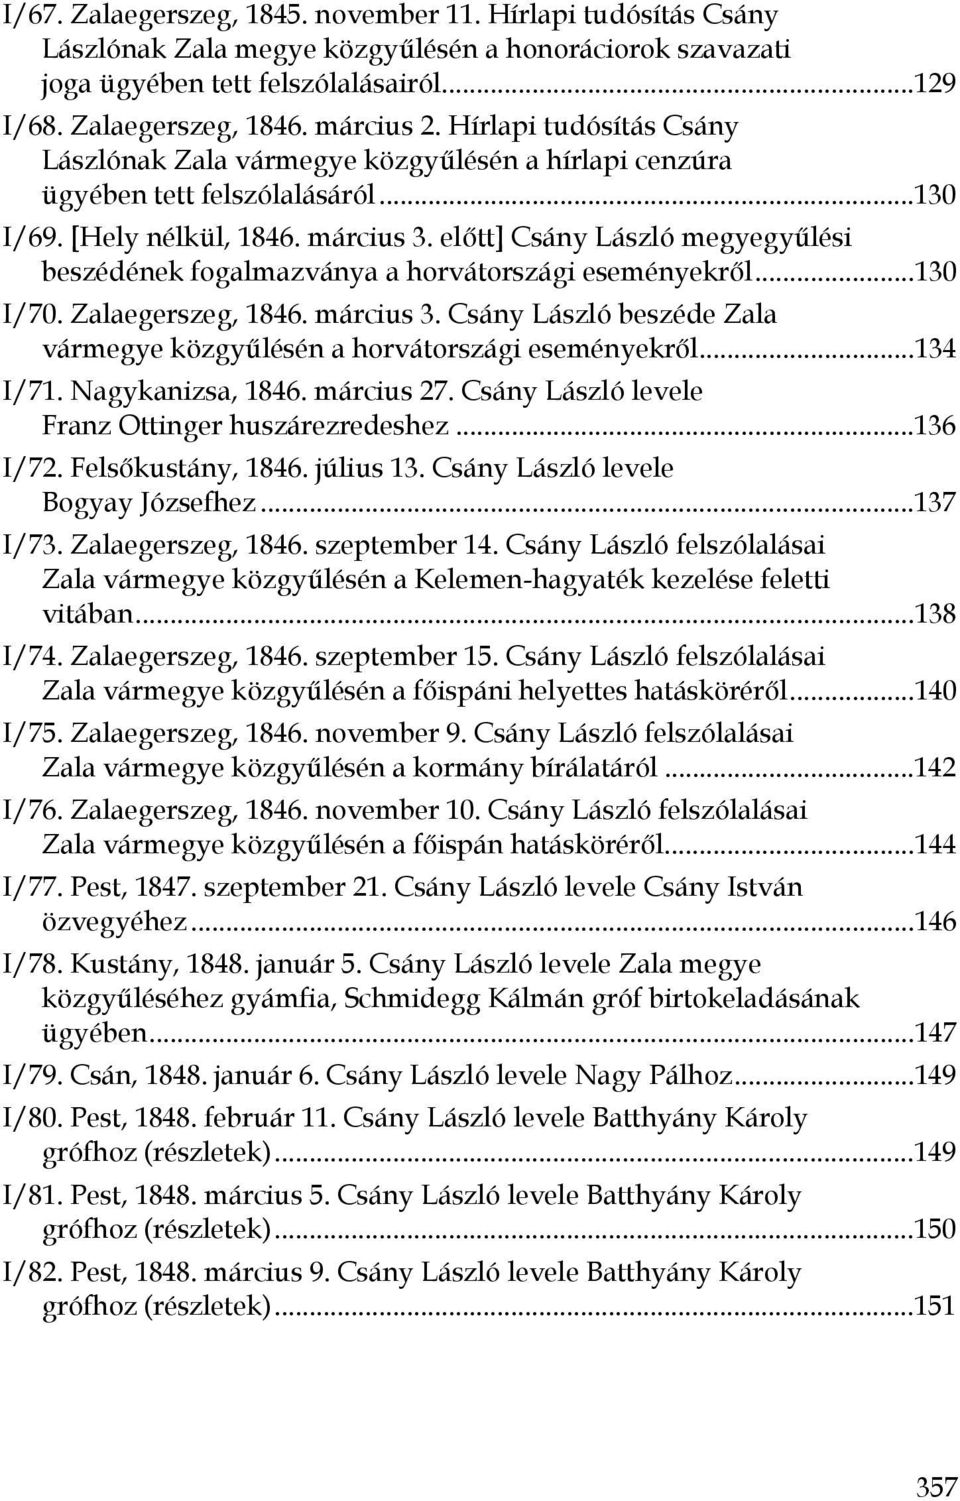 előtt] Csány László megyegyűlési beszédének fogalmazványa a horvátországi eseményekről...130 I/70. Zalaegerszeg, 1846. március 3.